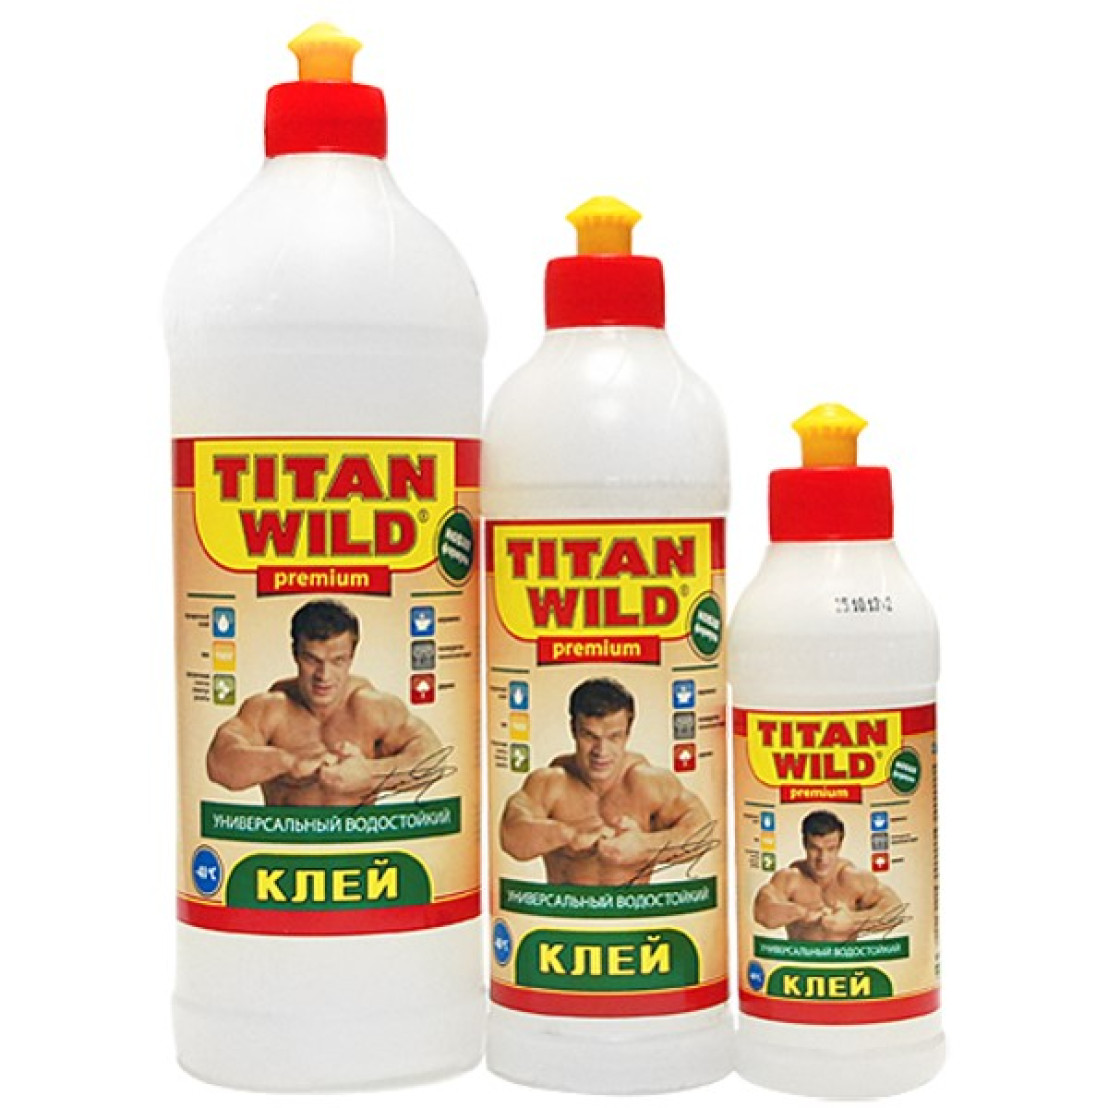 1 вилд. Клей Титан Wild 0,25л. Клей Titan Wild Premium (0.25). Клей полимерный Титан Wild вилд универсальный. Клей универсальный "Titan Wild", 0,5л..